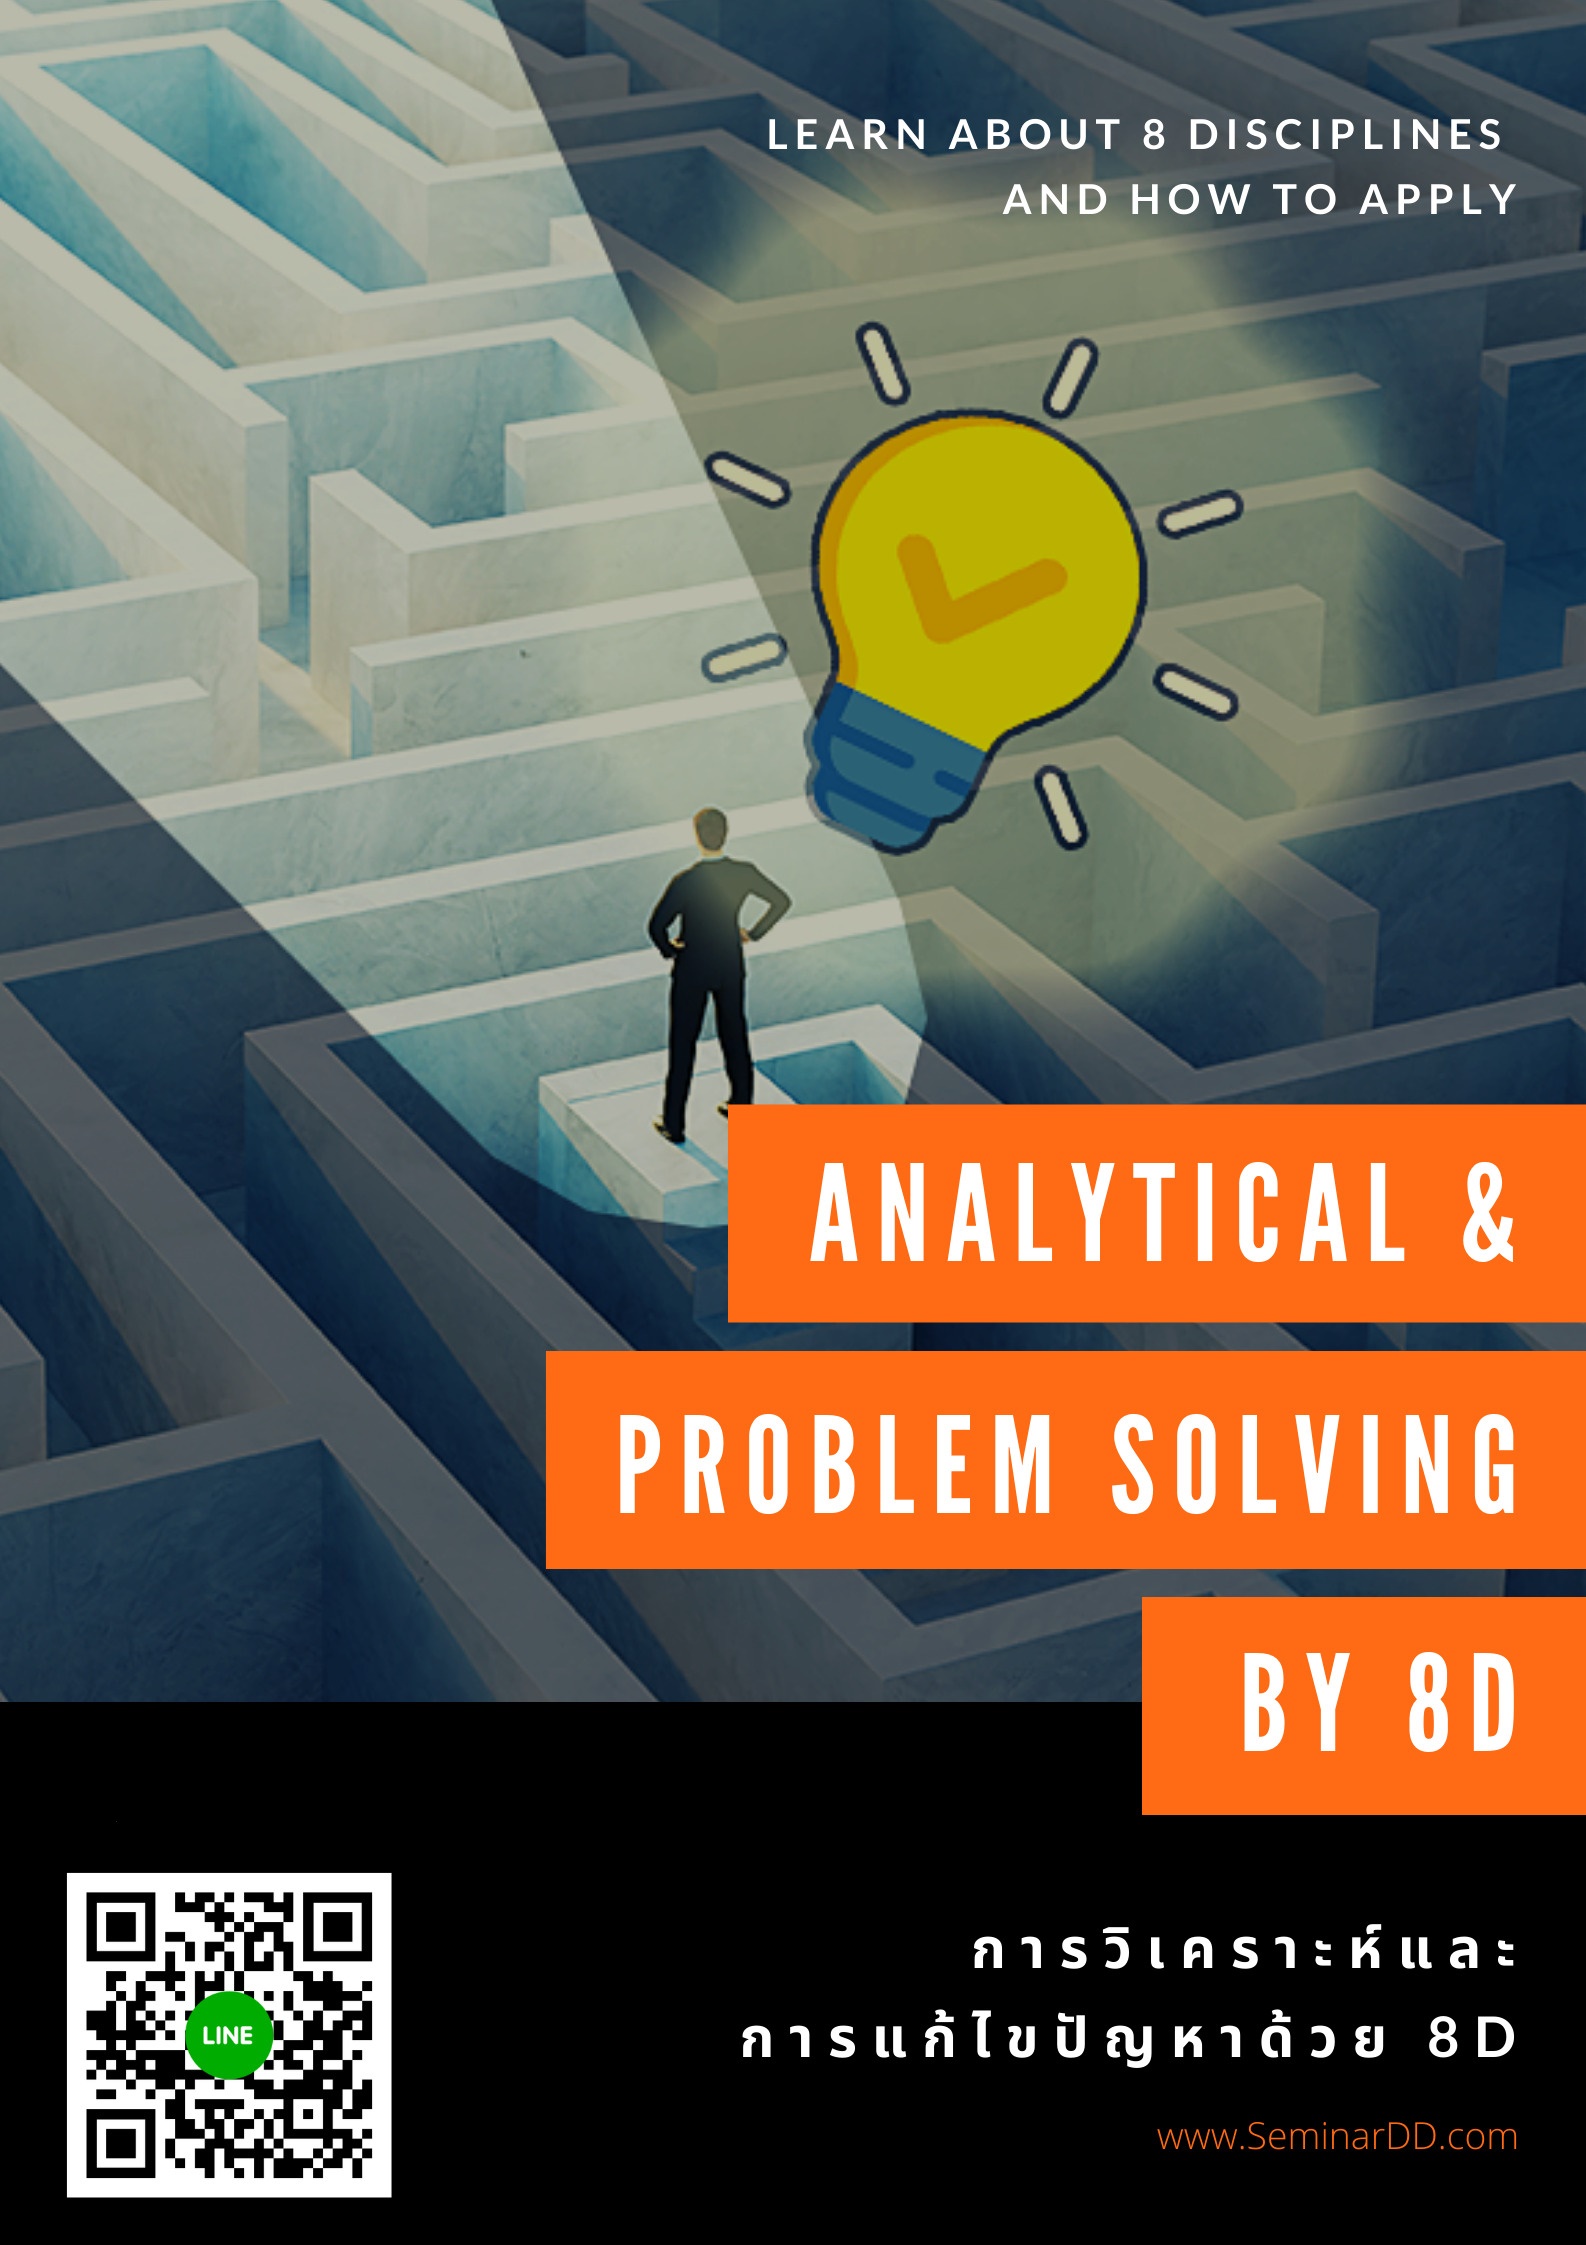 หลักสูตรอบรม การวิเคราะห์และการแก้ไขปัญหาด้วย 8D  (Analytical & Problem Solving by 8D)